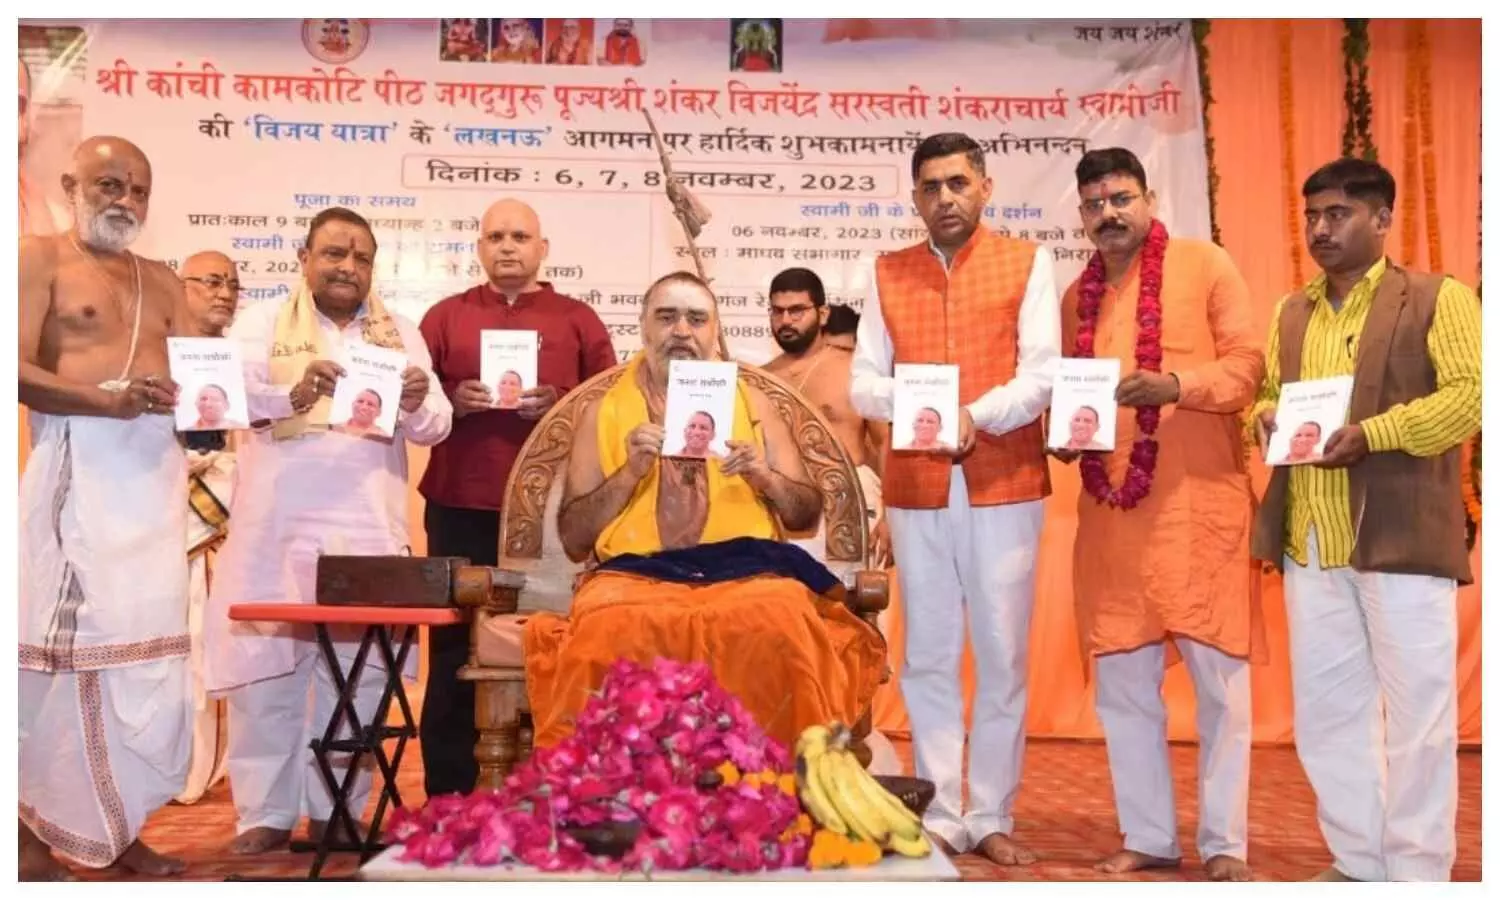 Shankaracharya Vijayendra Saraswati launched book Janta Sarvopari